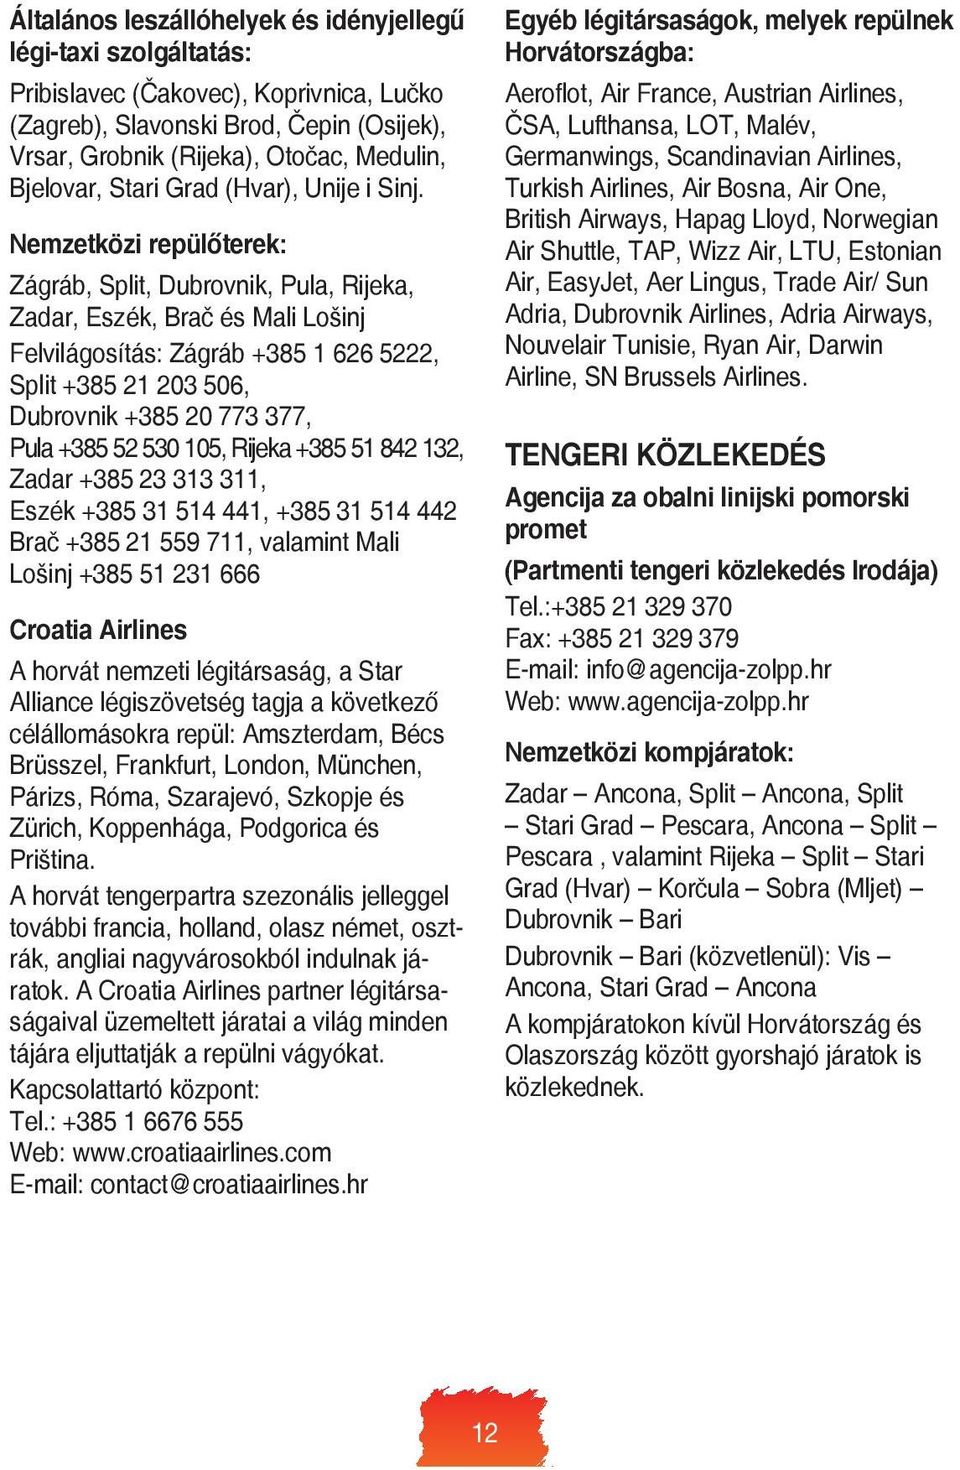 Nemzetközi repülőterek: Zágráb, Split, Dubrovnik, Pula, Rijeka, Zadar, Eszék, Brač és Mali Lošinj Felvilágosítás: Zágráb +385 1 626 5222, Split +385 21 203 506, Dubrovnik +385 20 773 377, Pula +385